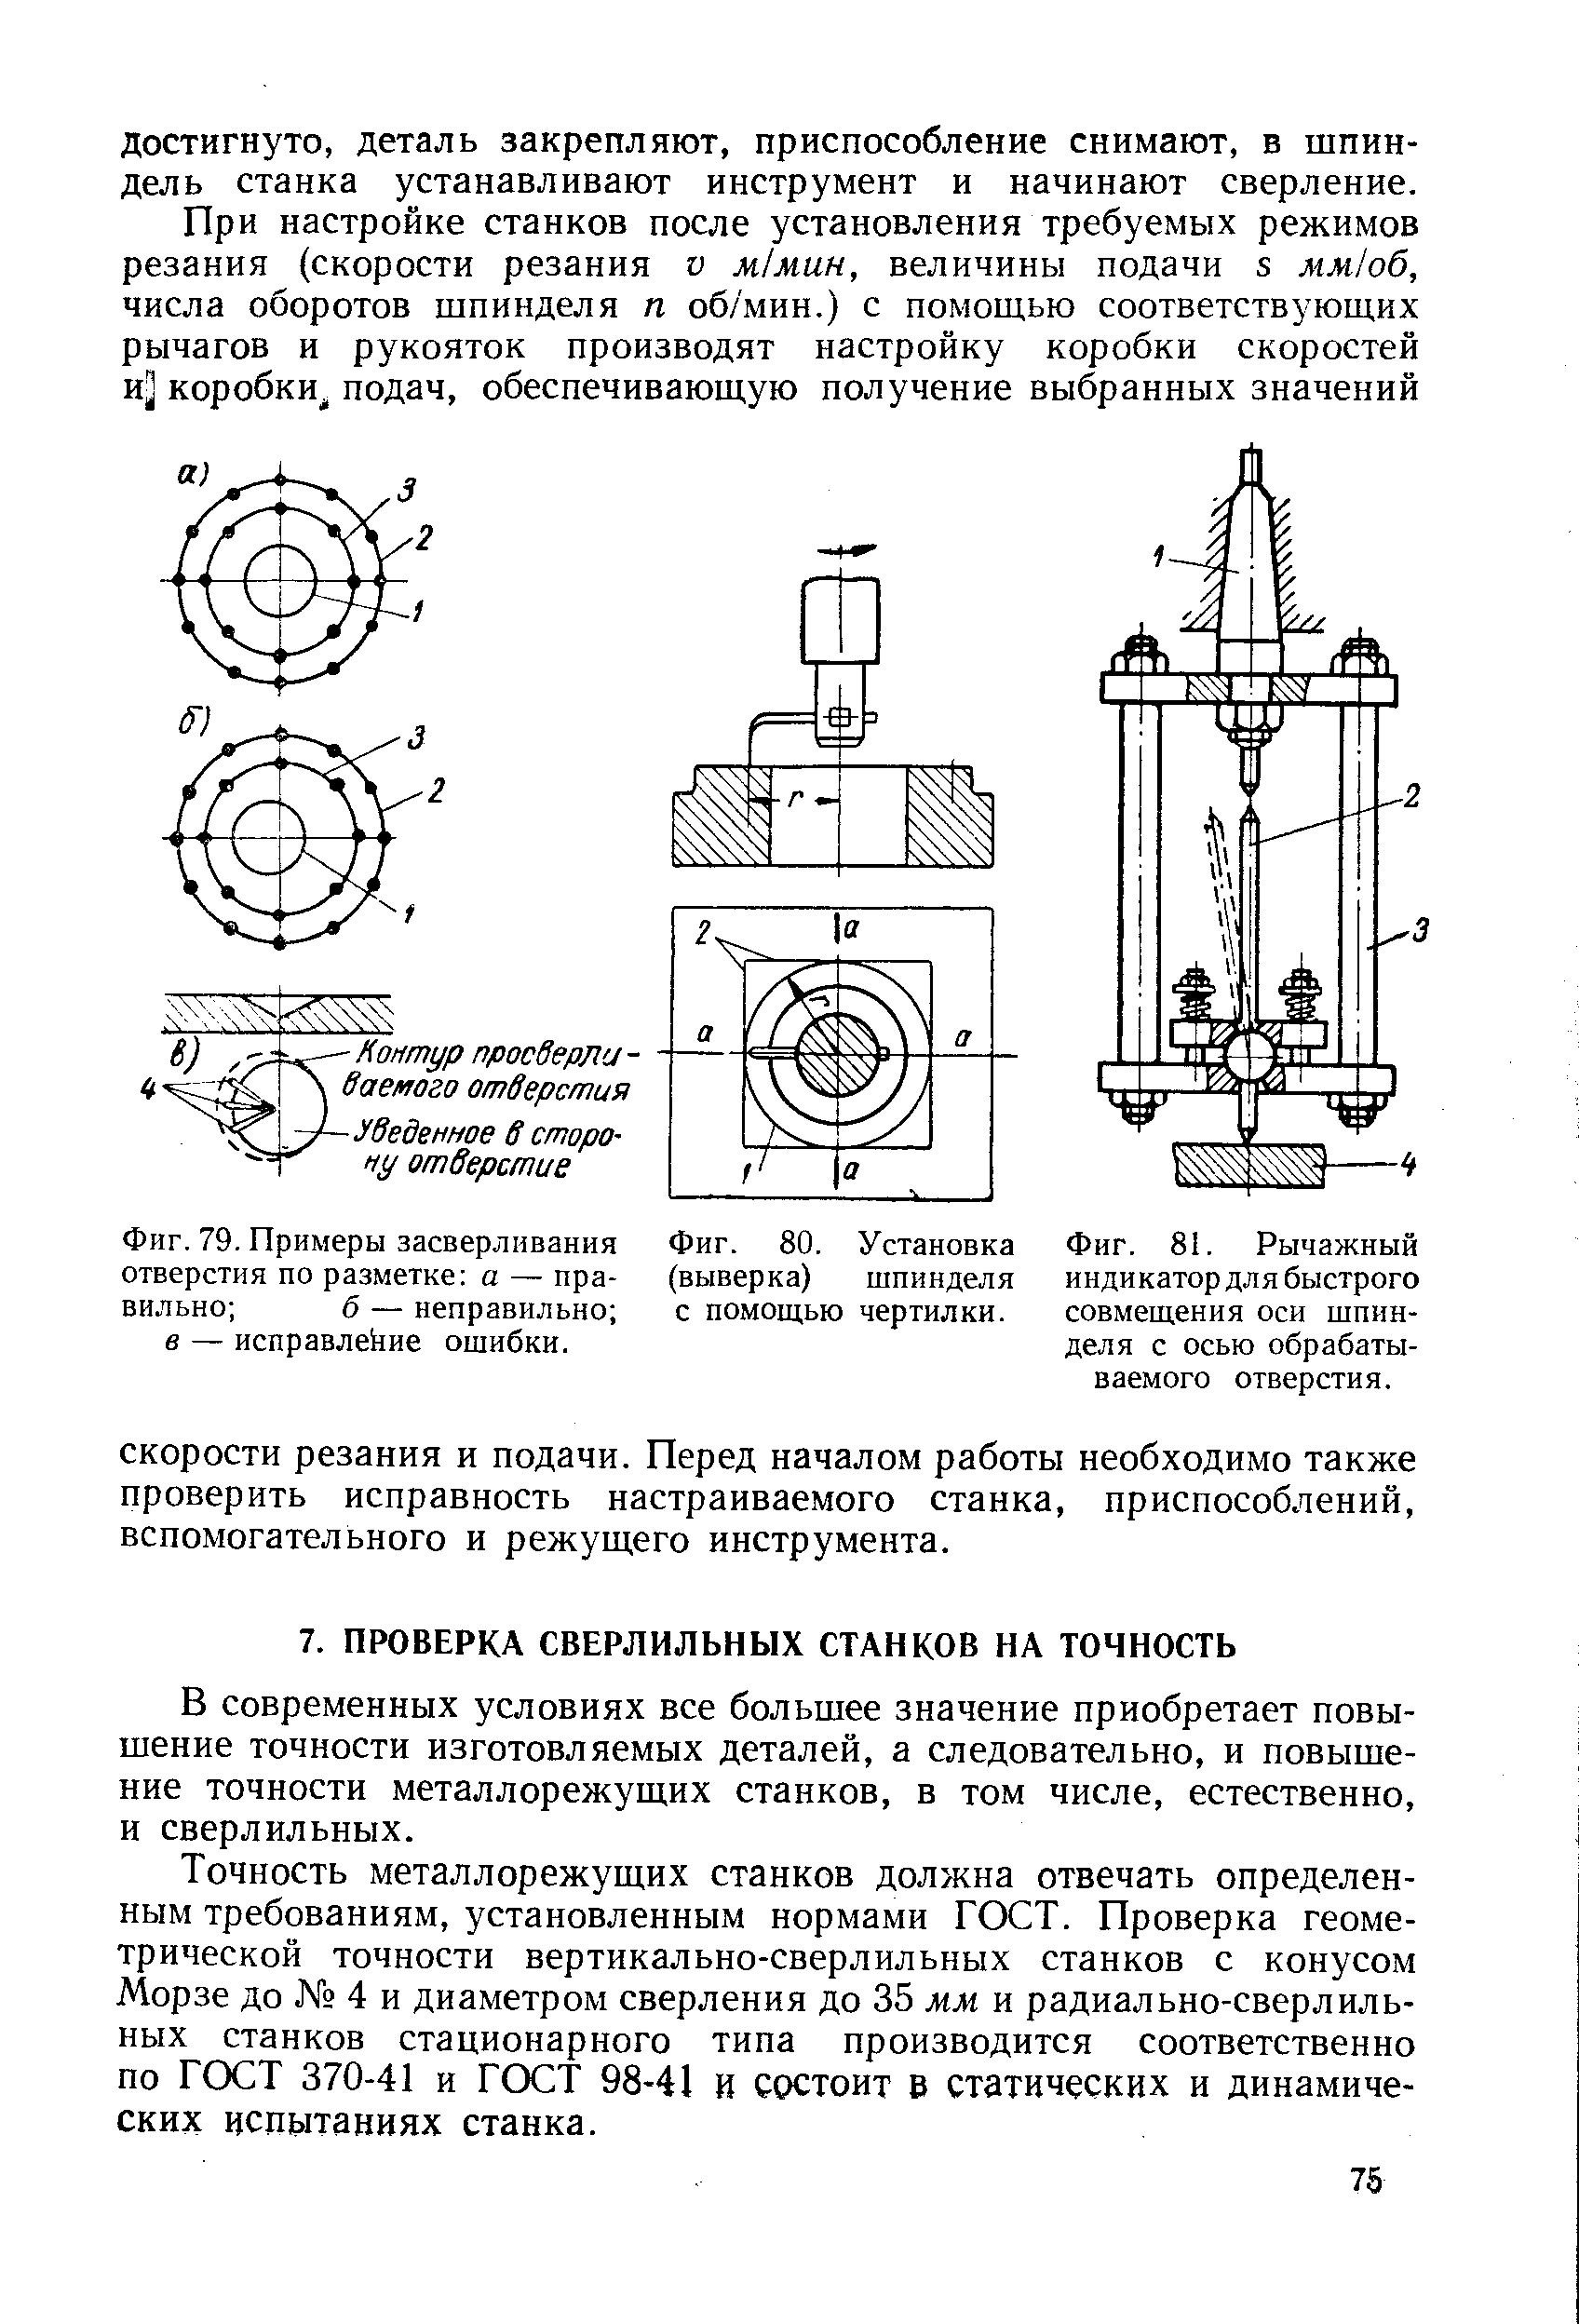 Методика выполнения работы. 1. проверка радиального биения центрирующей поверхности шпинделя передней бабки под патрон (рисунок 5.1)